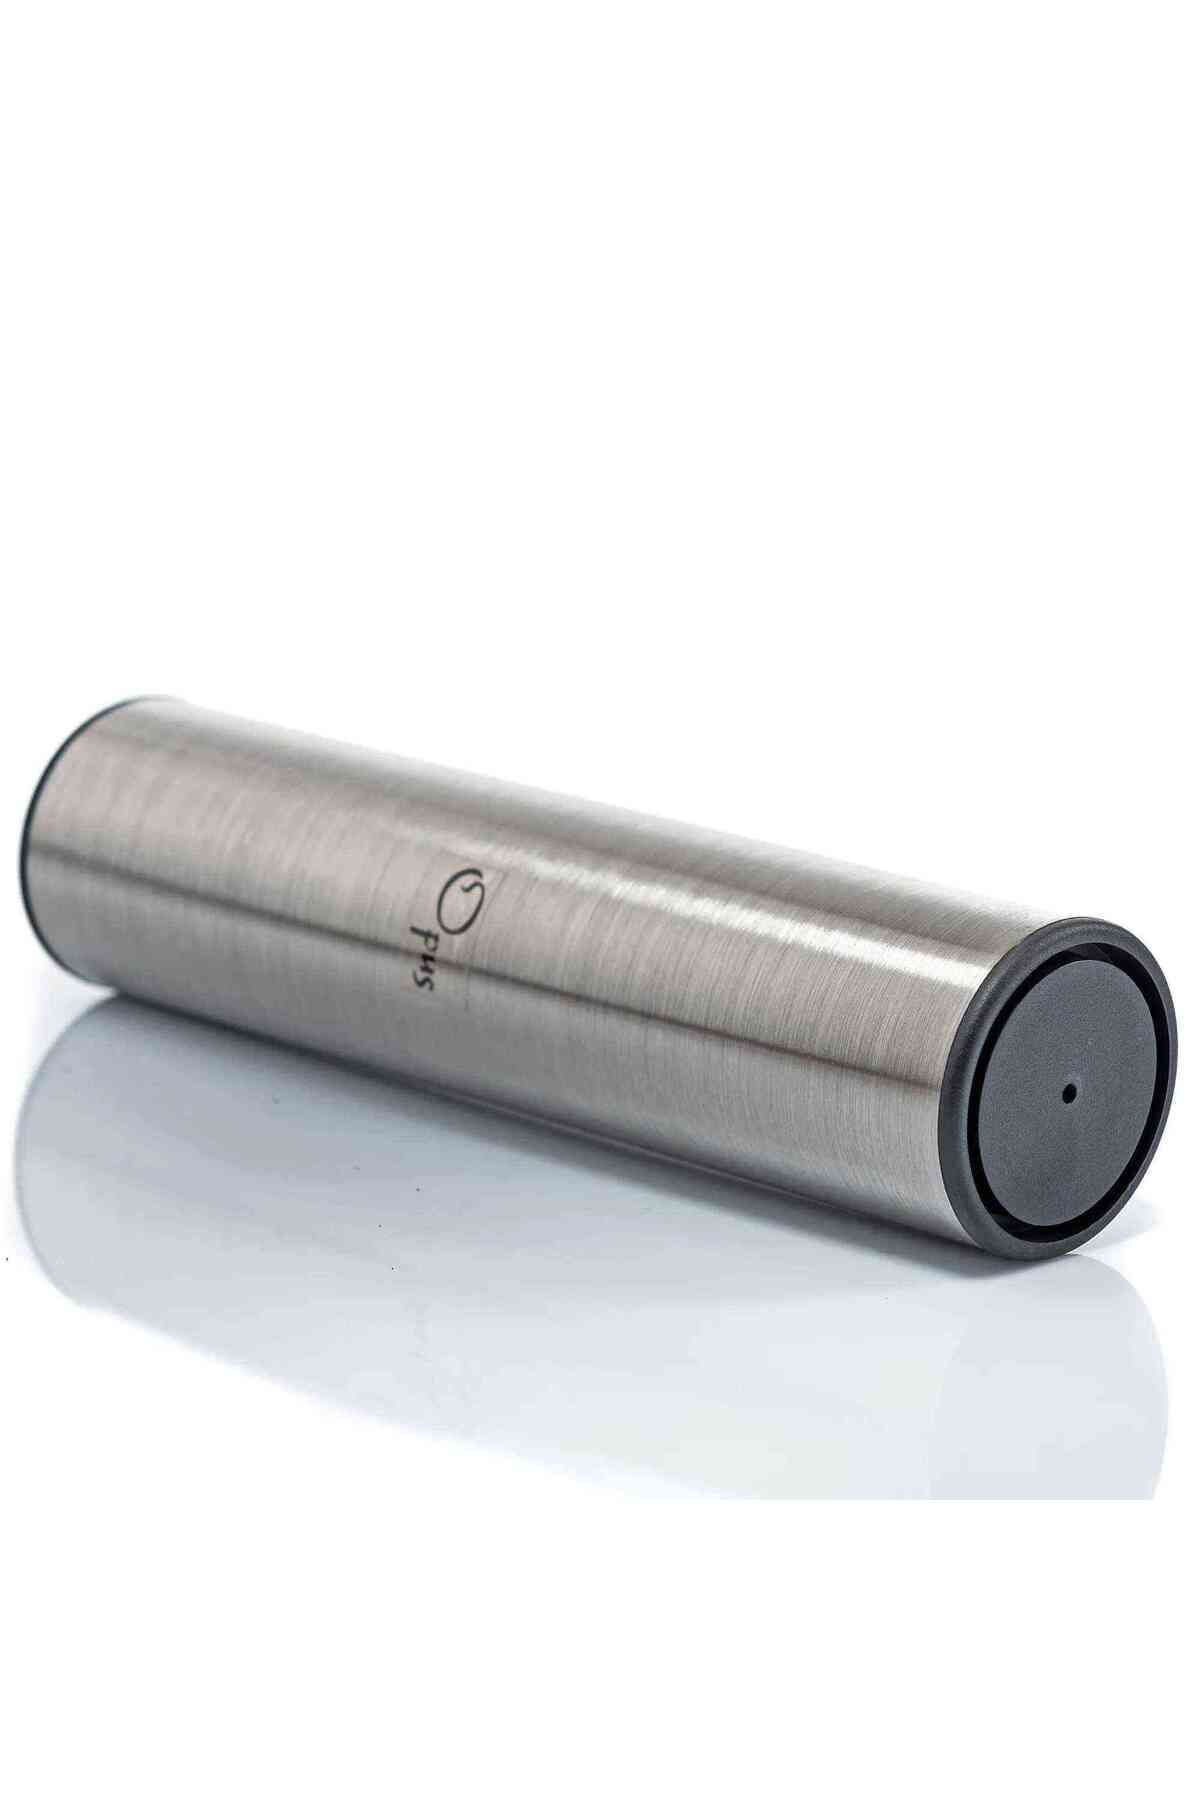 OPUS Msh-1 Metal Shaker